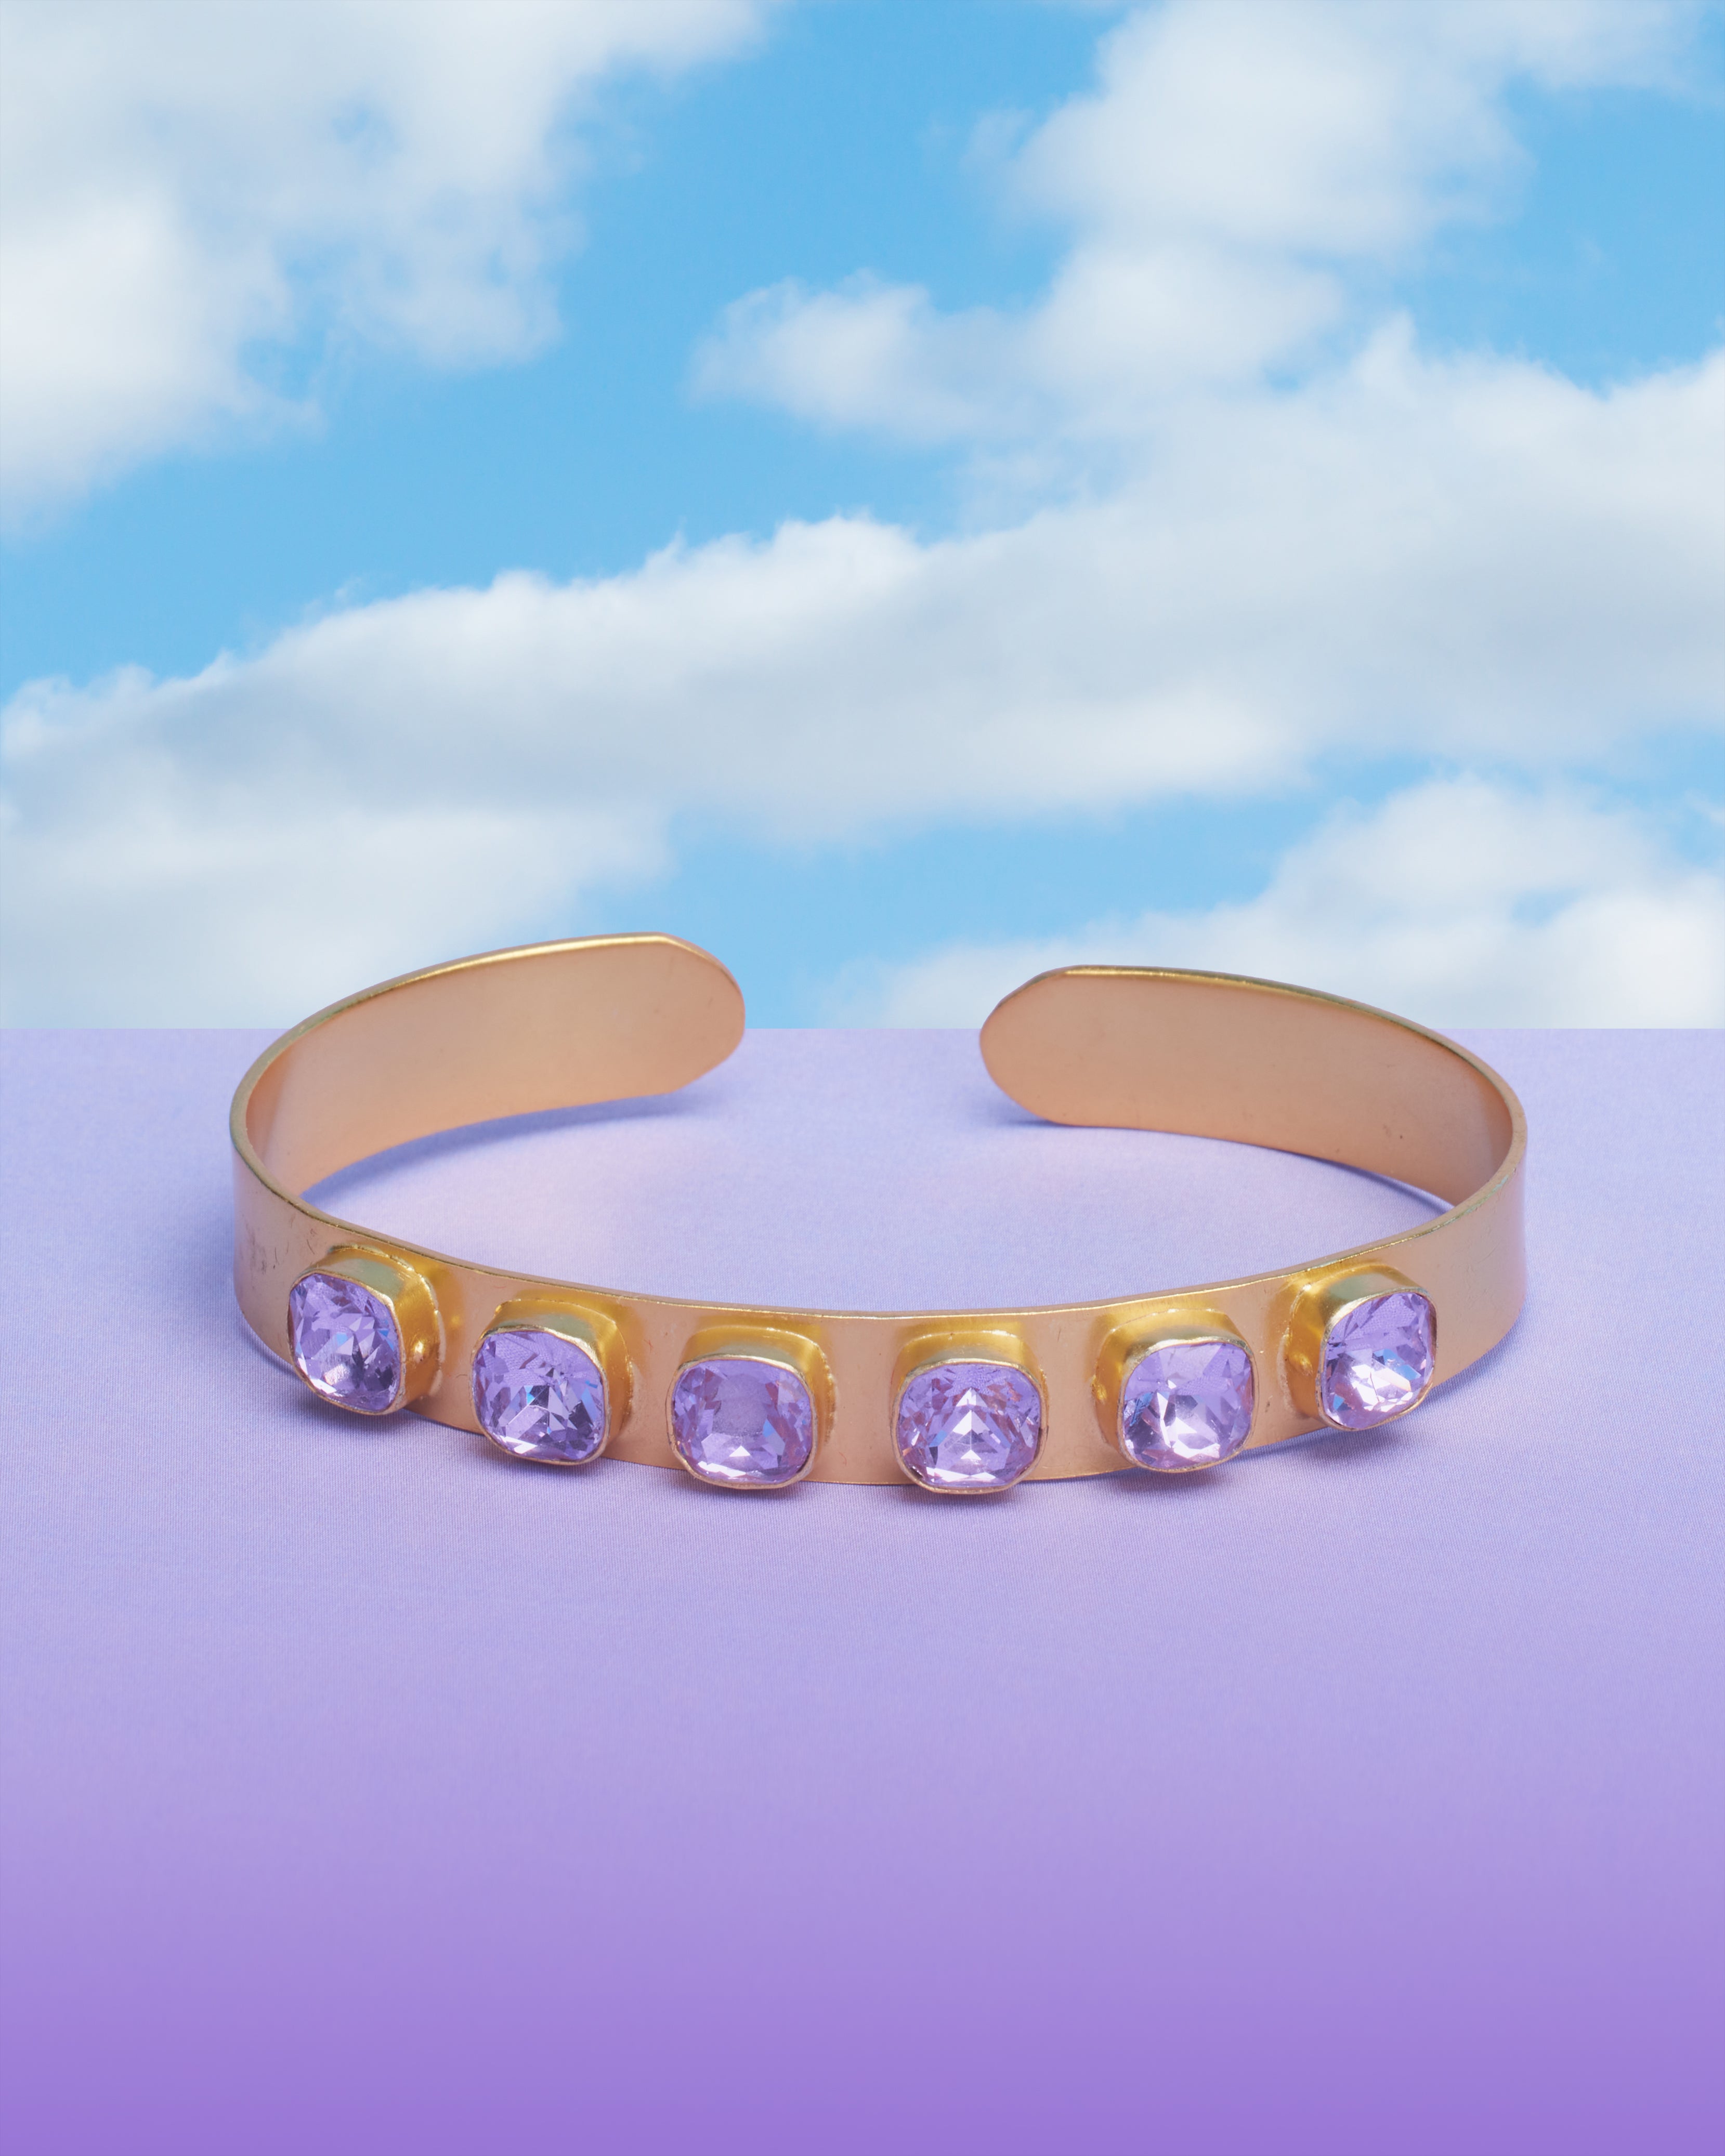 Finley Cuff Bracelet in Crystal Amethyst Lavender